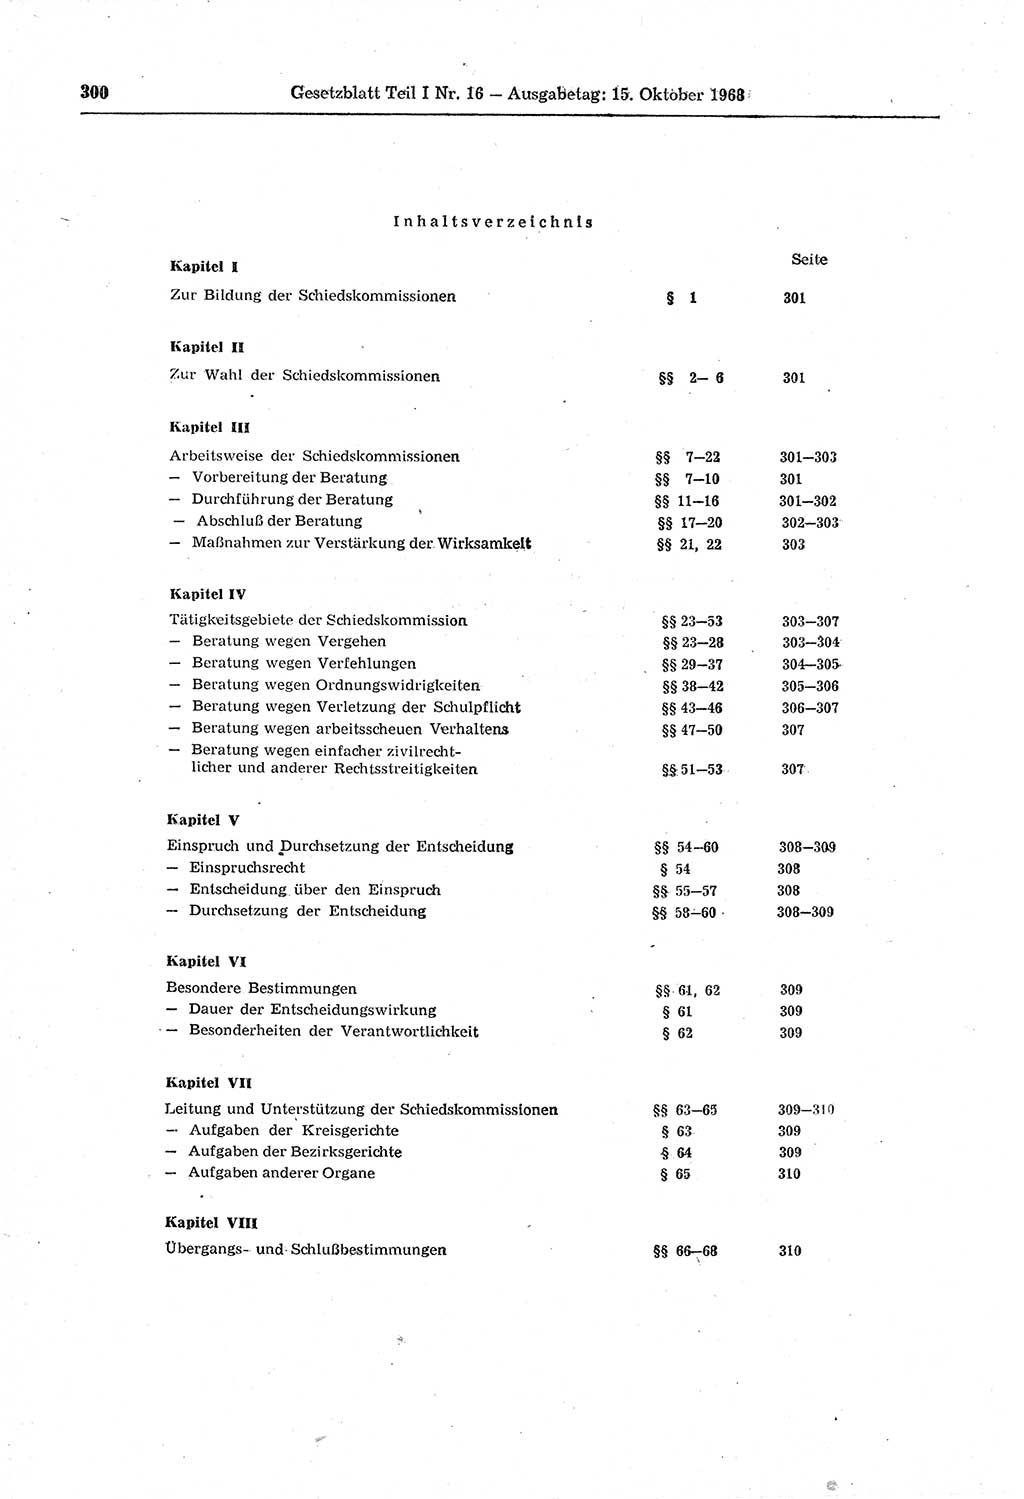 Gesetzblatt (GBl.) der Deutschen Demokratischen Republik (DDR) Teil Ⅰ 1968, Seite 300 (GBl. DDR Ⅰ 1968, S. 300)